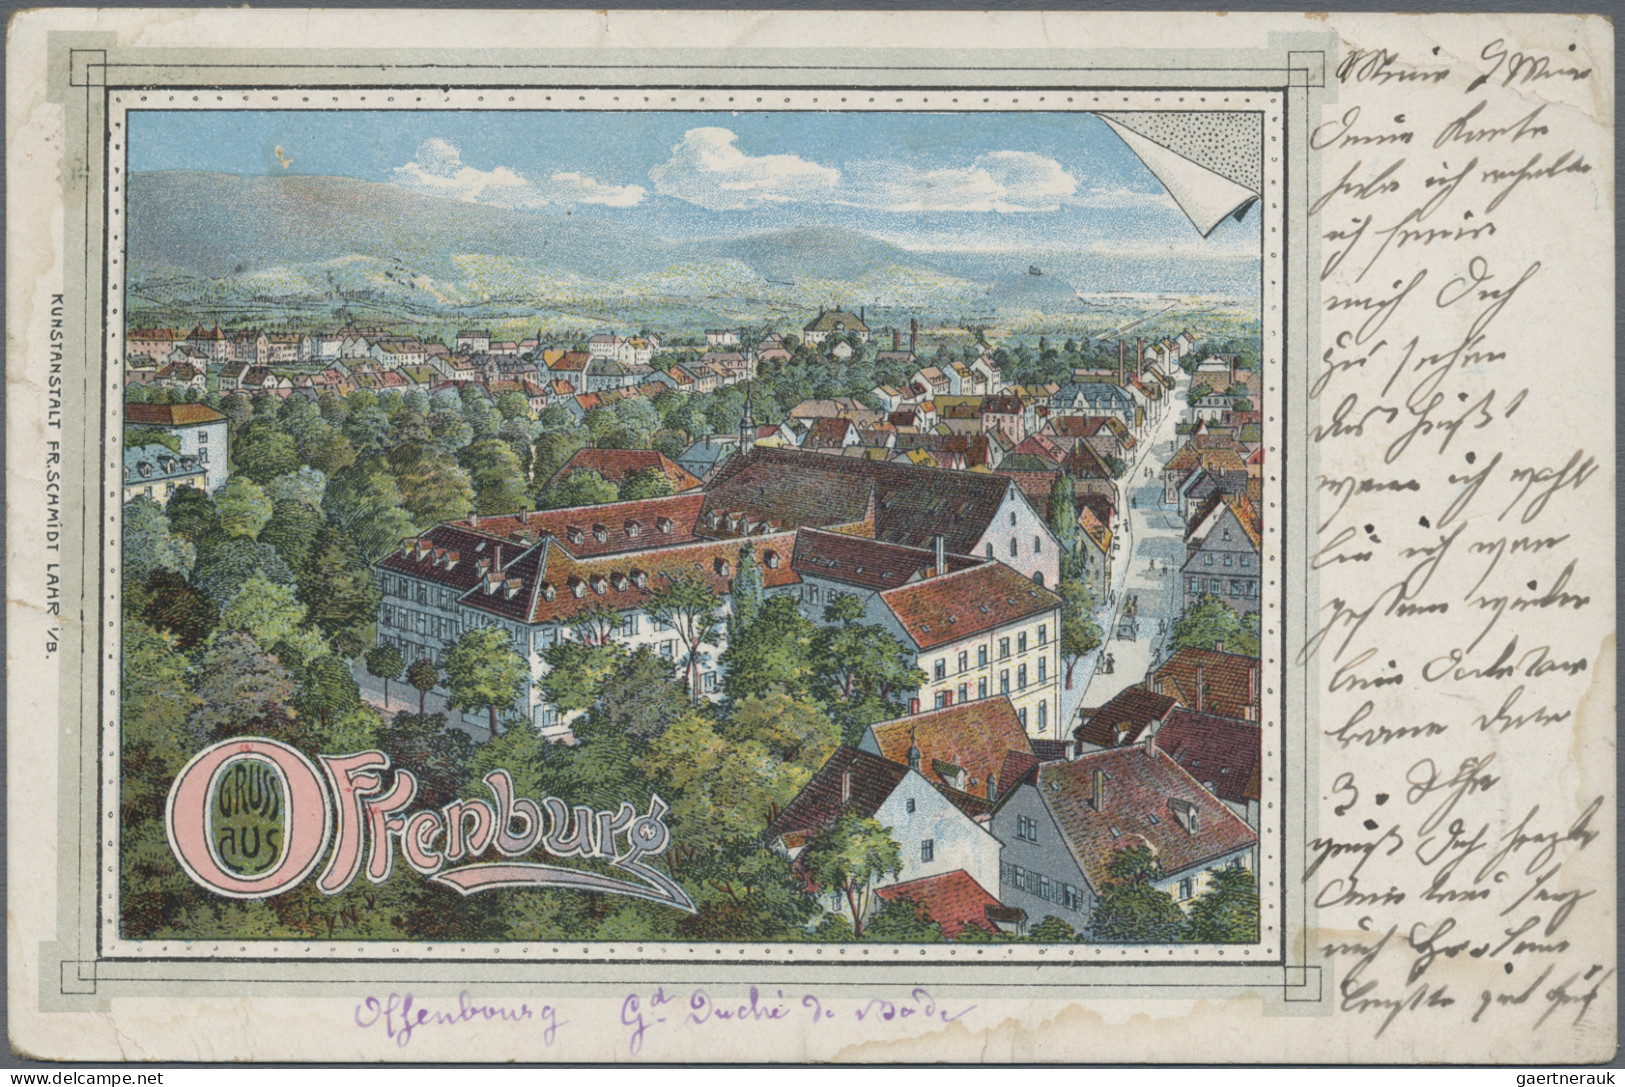 Ansichtskarten: Baden-Württemberg: BADEN-WÜRTTEMBERG, umfangreicher Posten mit c